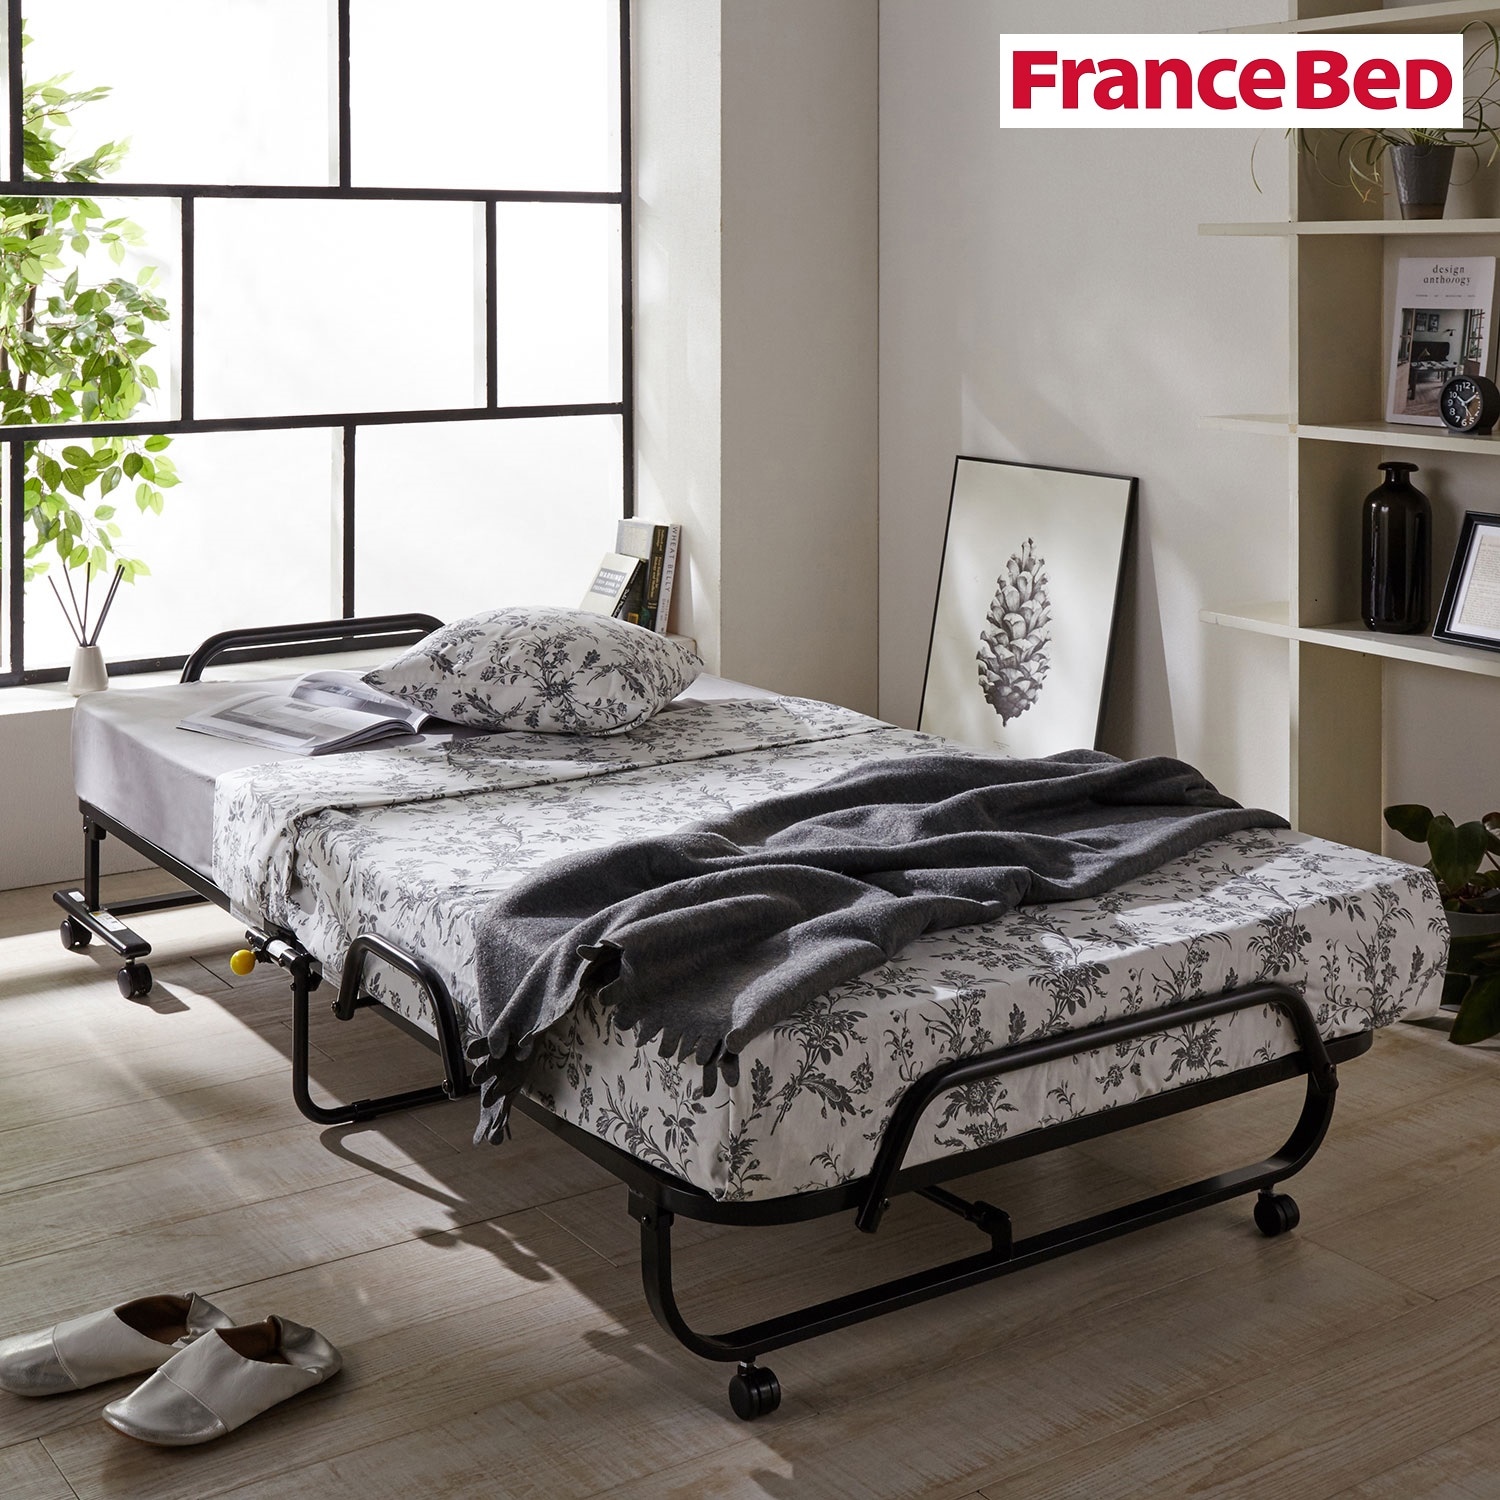 フランスベッド 折りたたみベッド マットレス付き 山折り型 寝具 家具